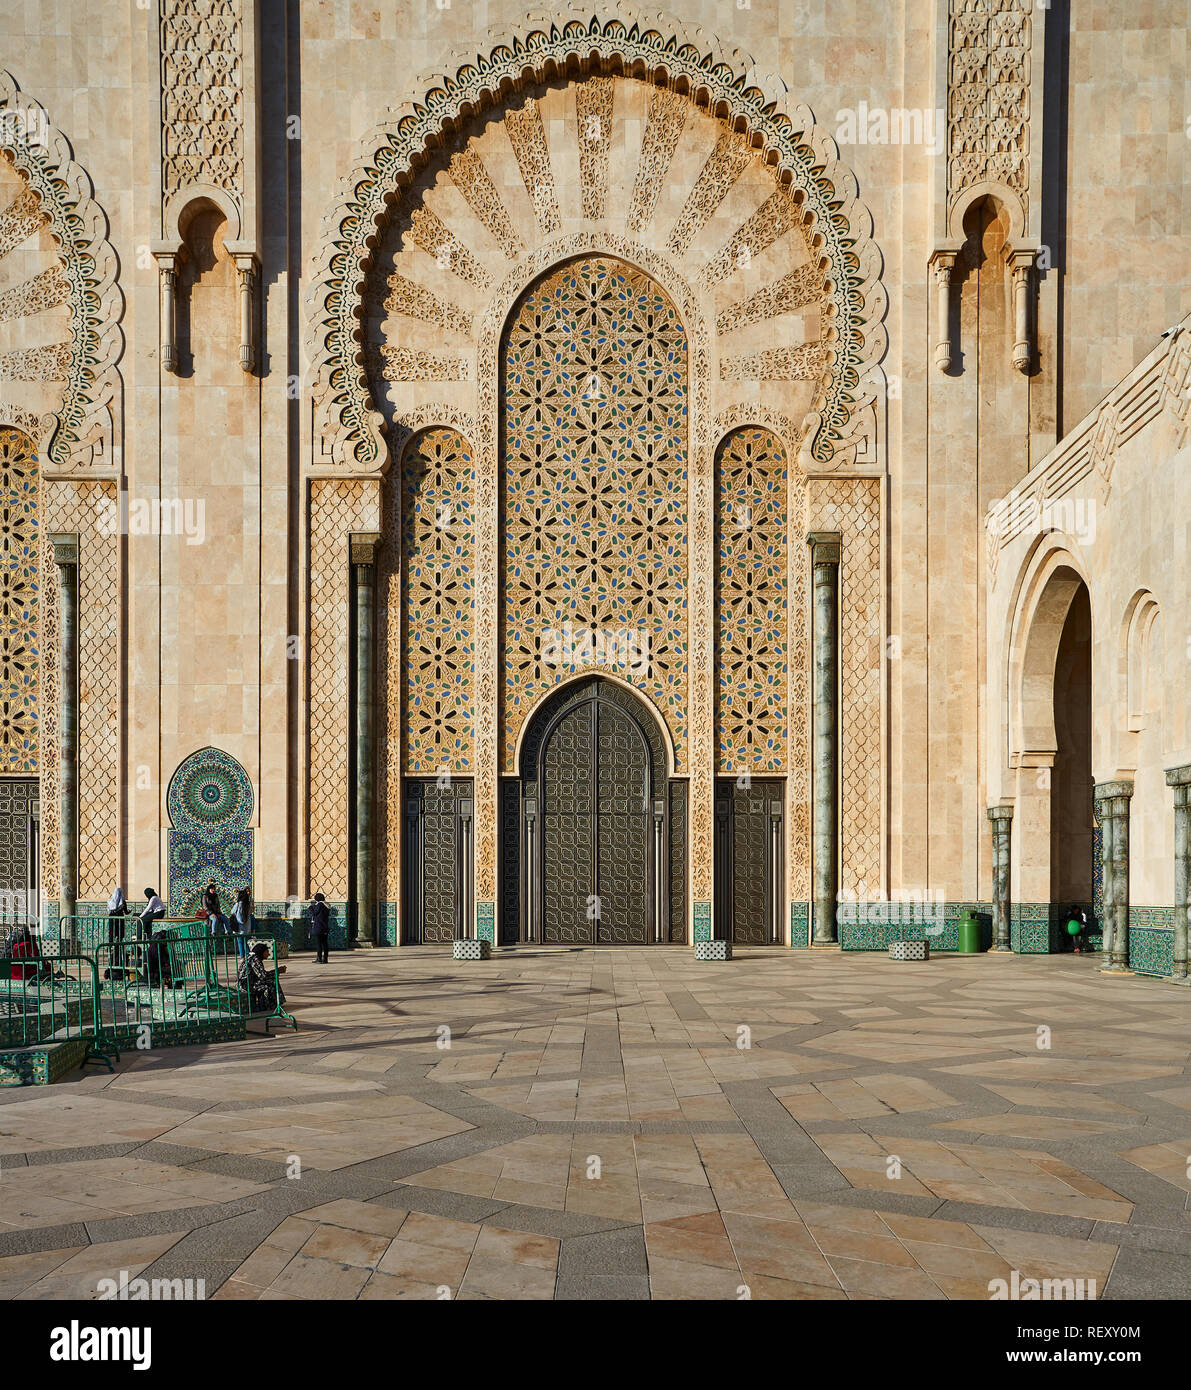 Mur de la Mosquée Hassan II, Casablanca, Maroc Banque D'Images